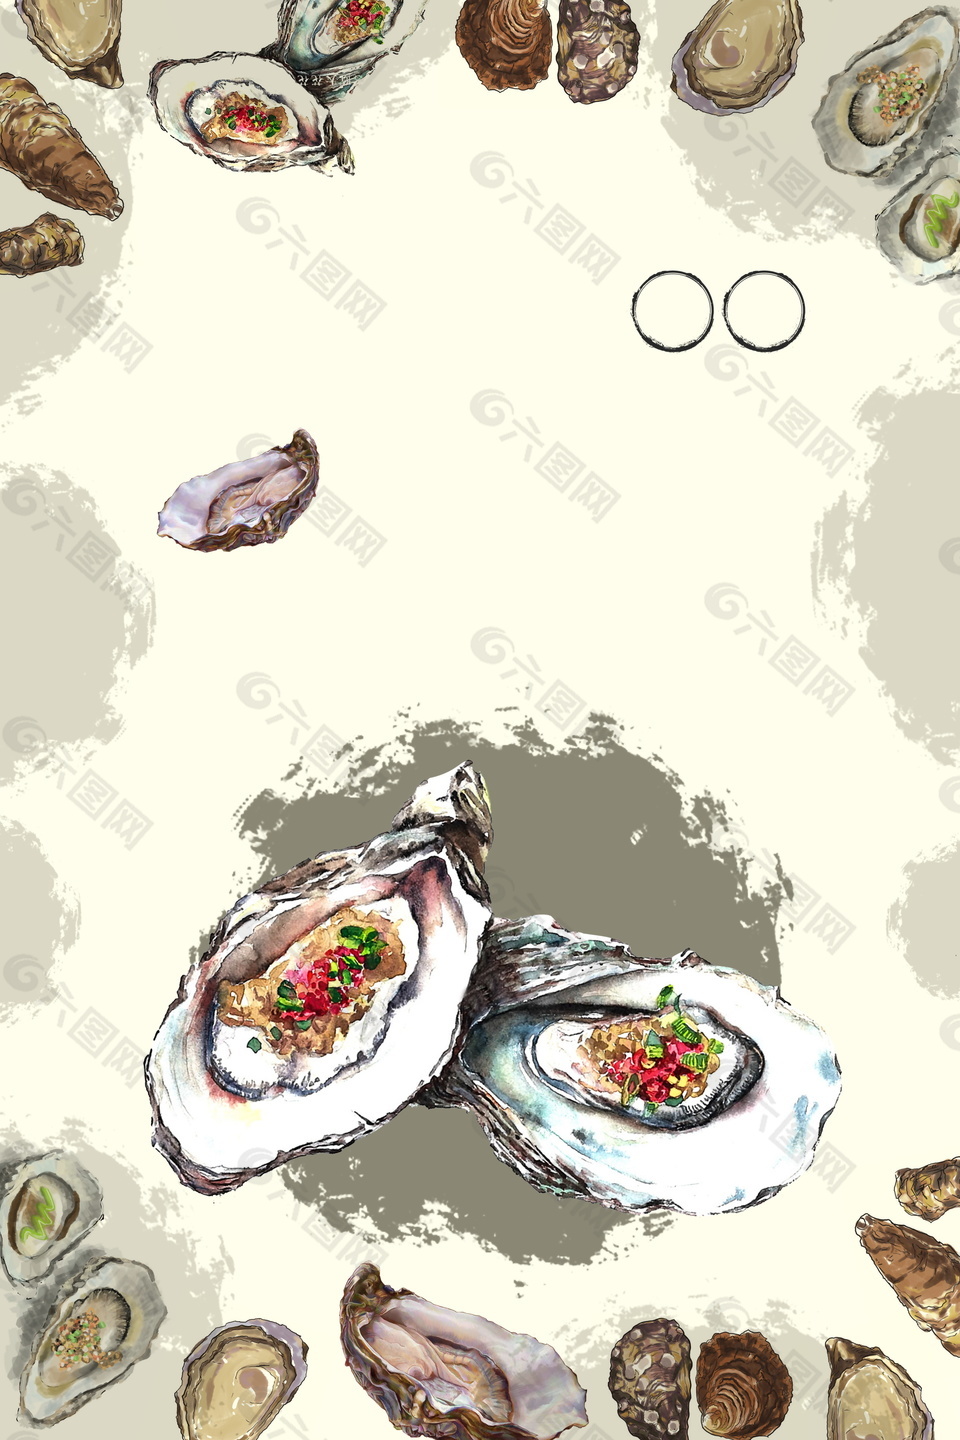 彩绘牡蛎海鲜吃货节背景素材